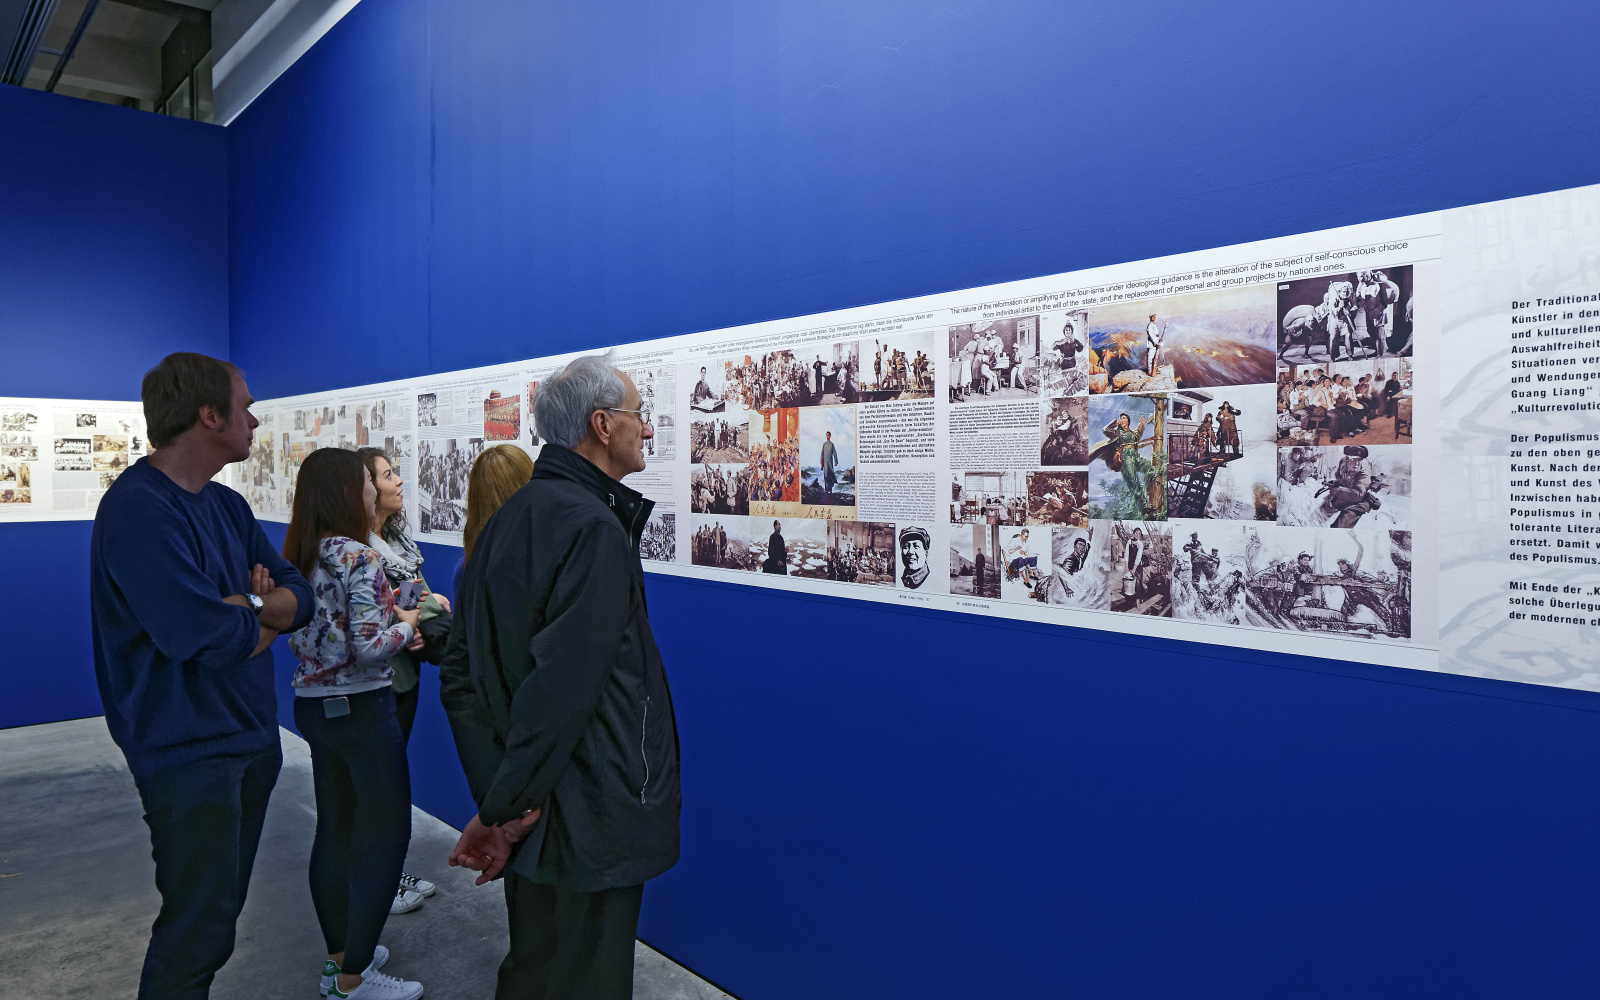 Fünf Menschen betrachten Bilder in einer Ausstellung, die auf blauem Grund hängen